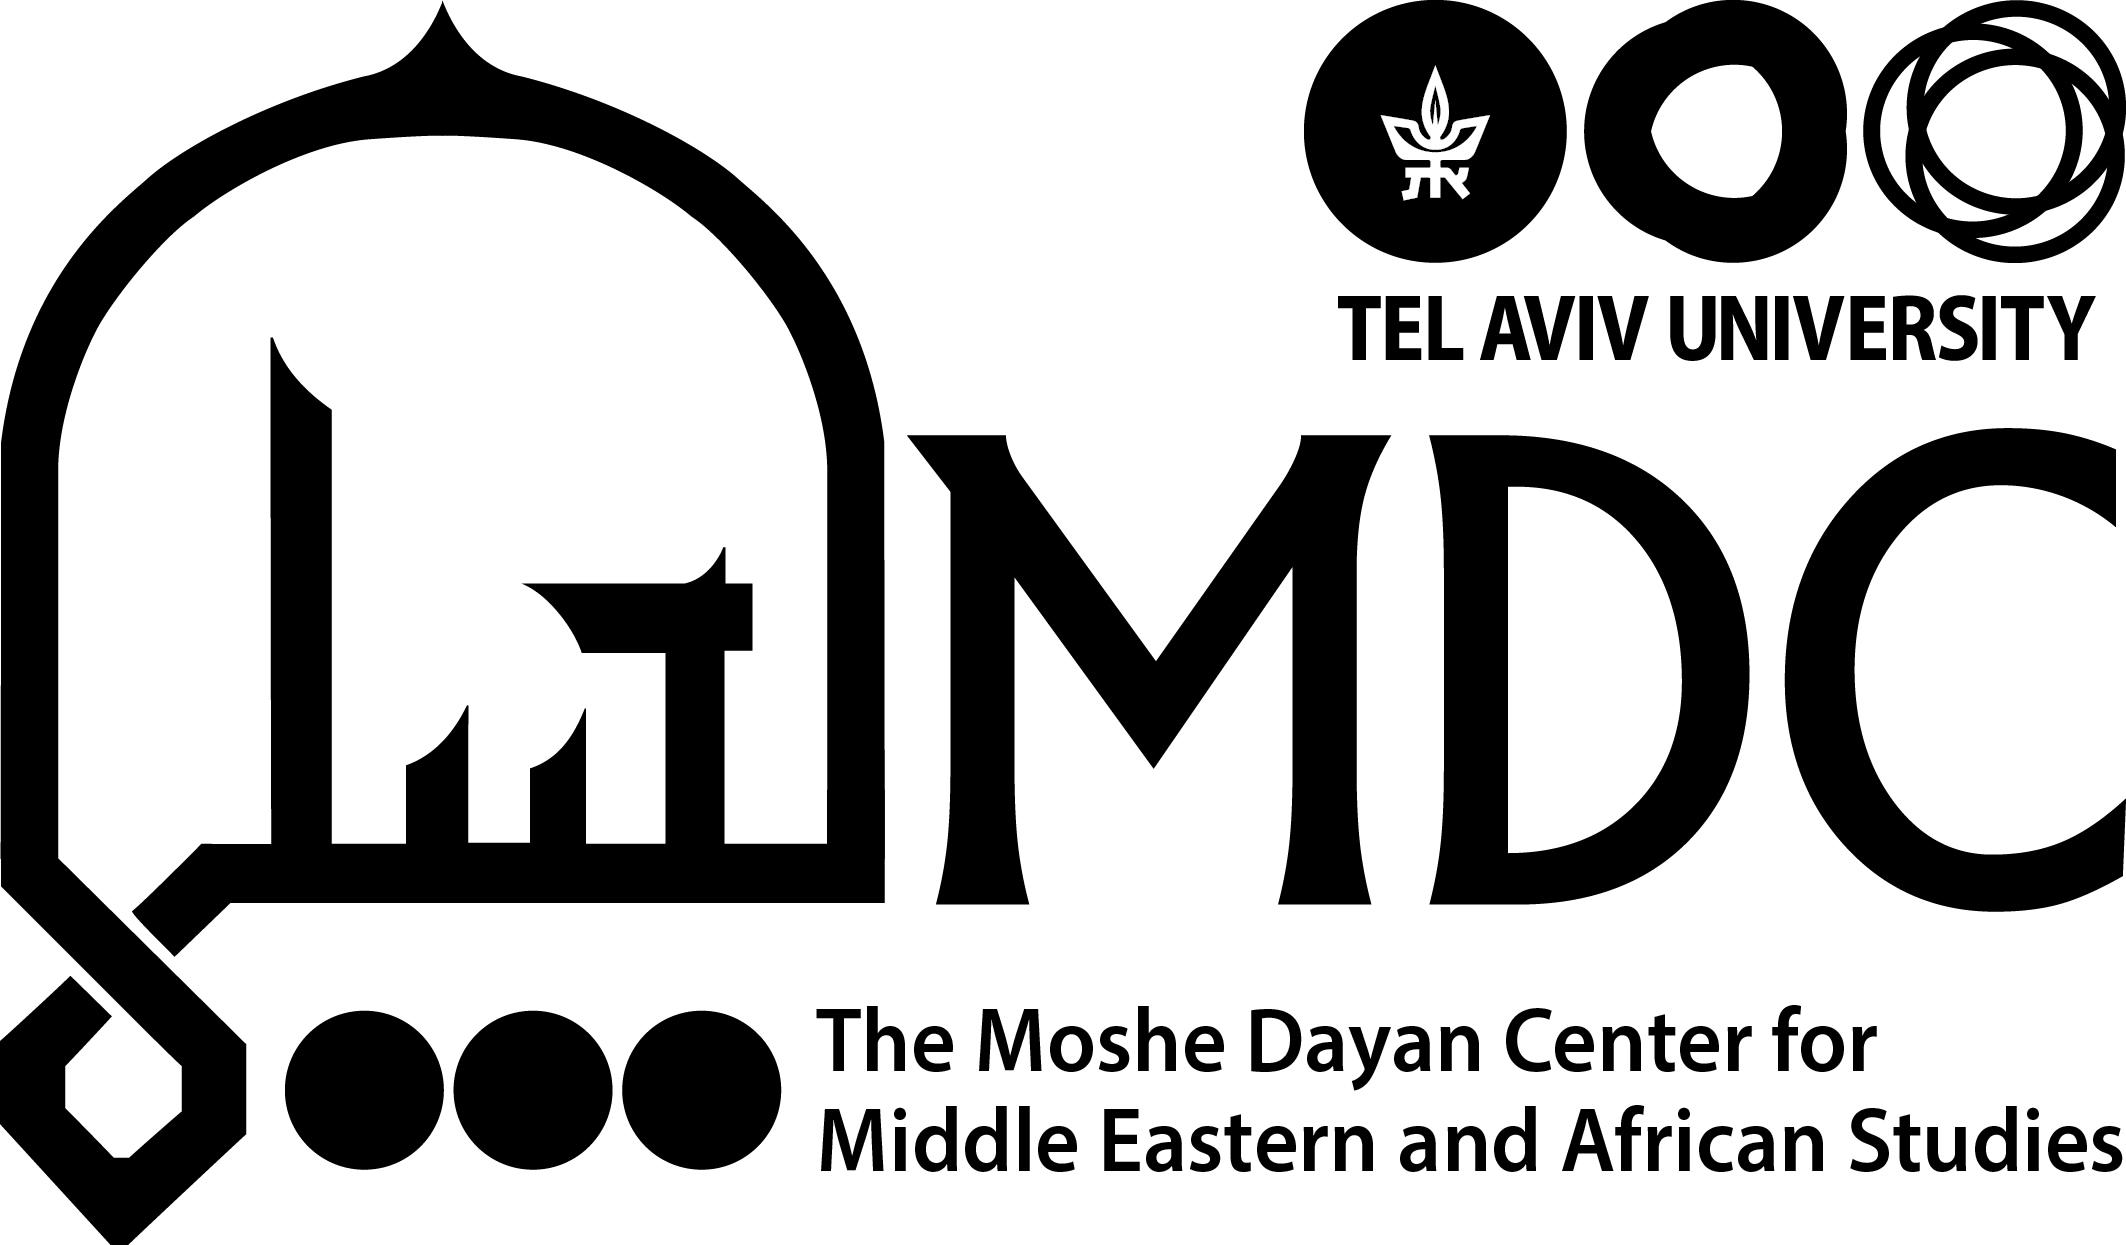 Moshe Dayan Center